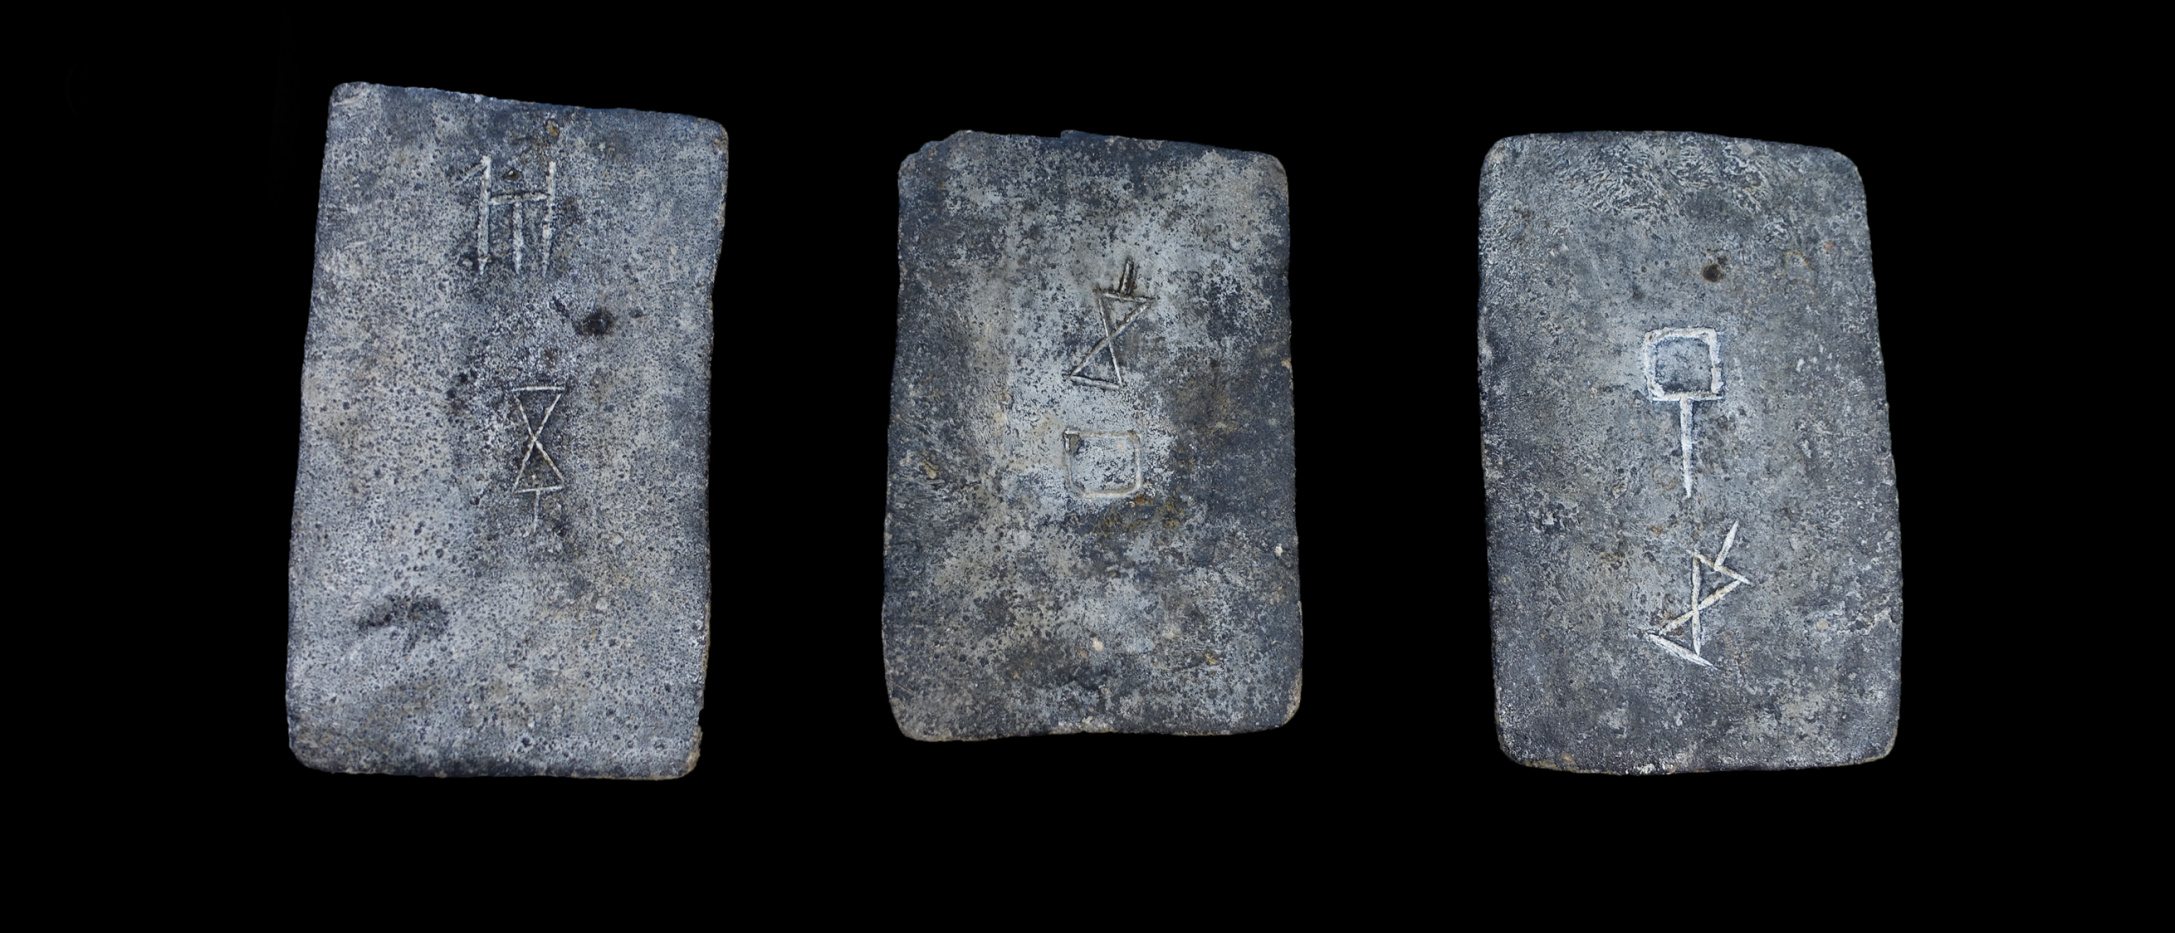 Unele dintre lingourile de tablă studiate din marea de pe coasta Israelului (aproximativ 1300-1200 î.Hr.).